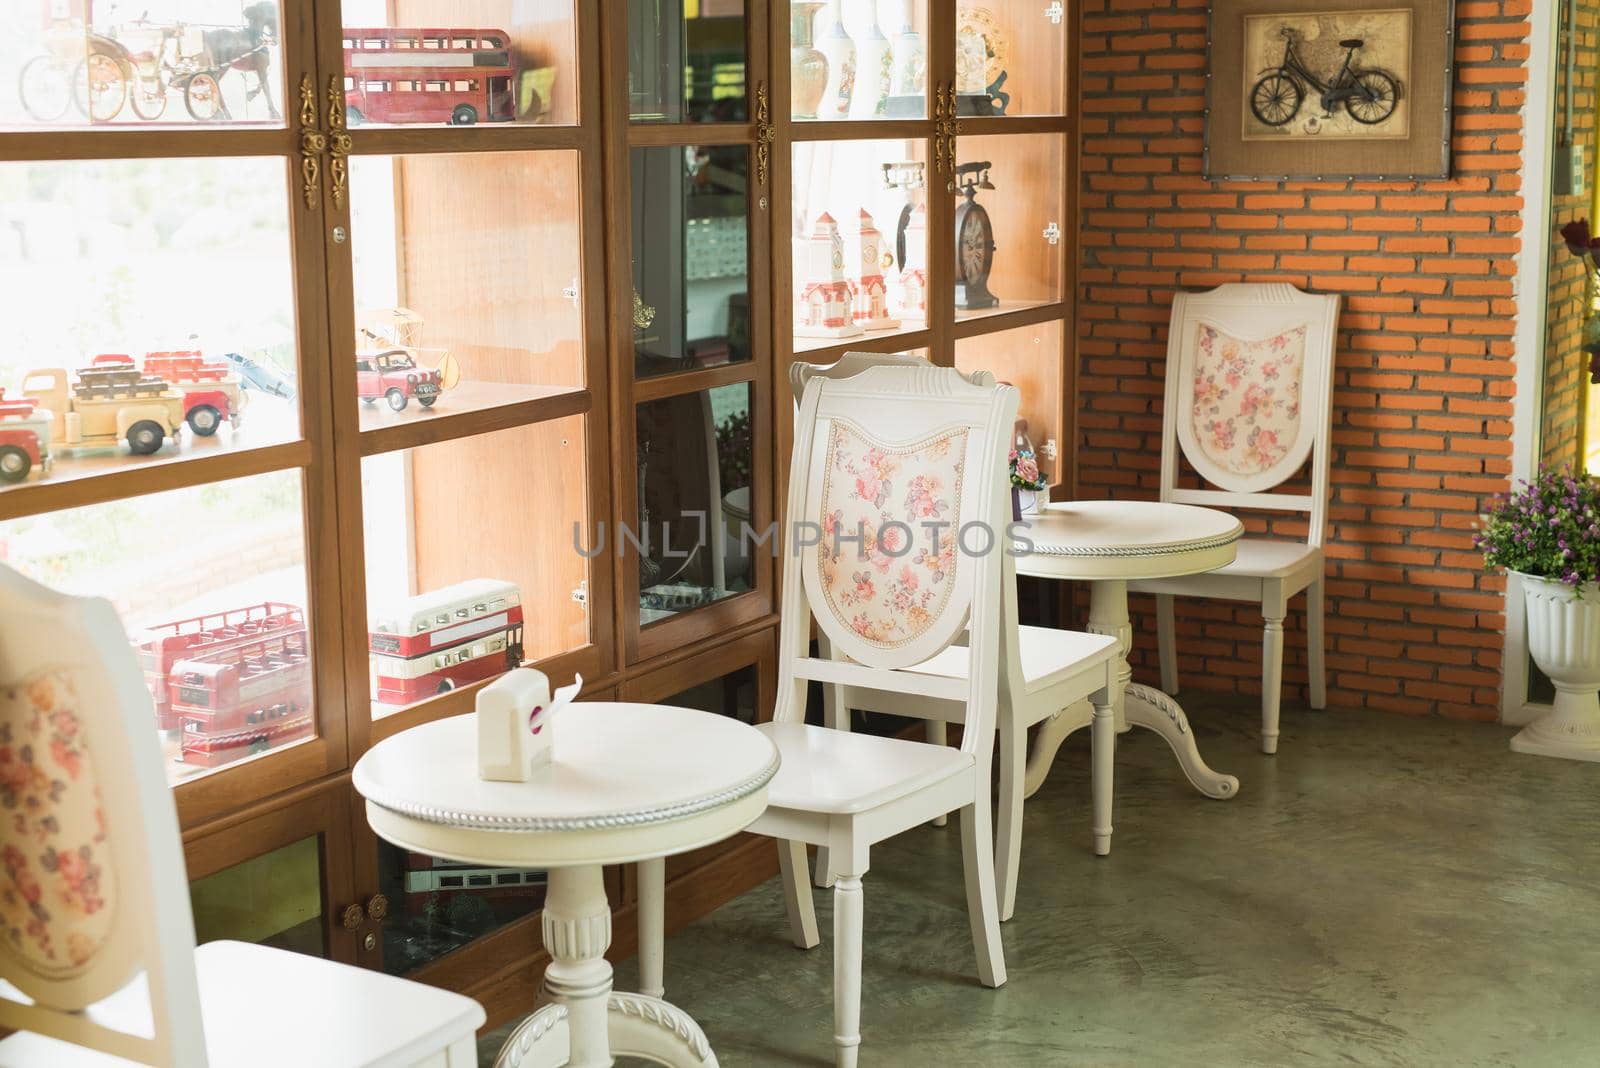 restaurant interior vintage by Wmpix